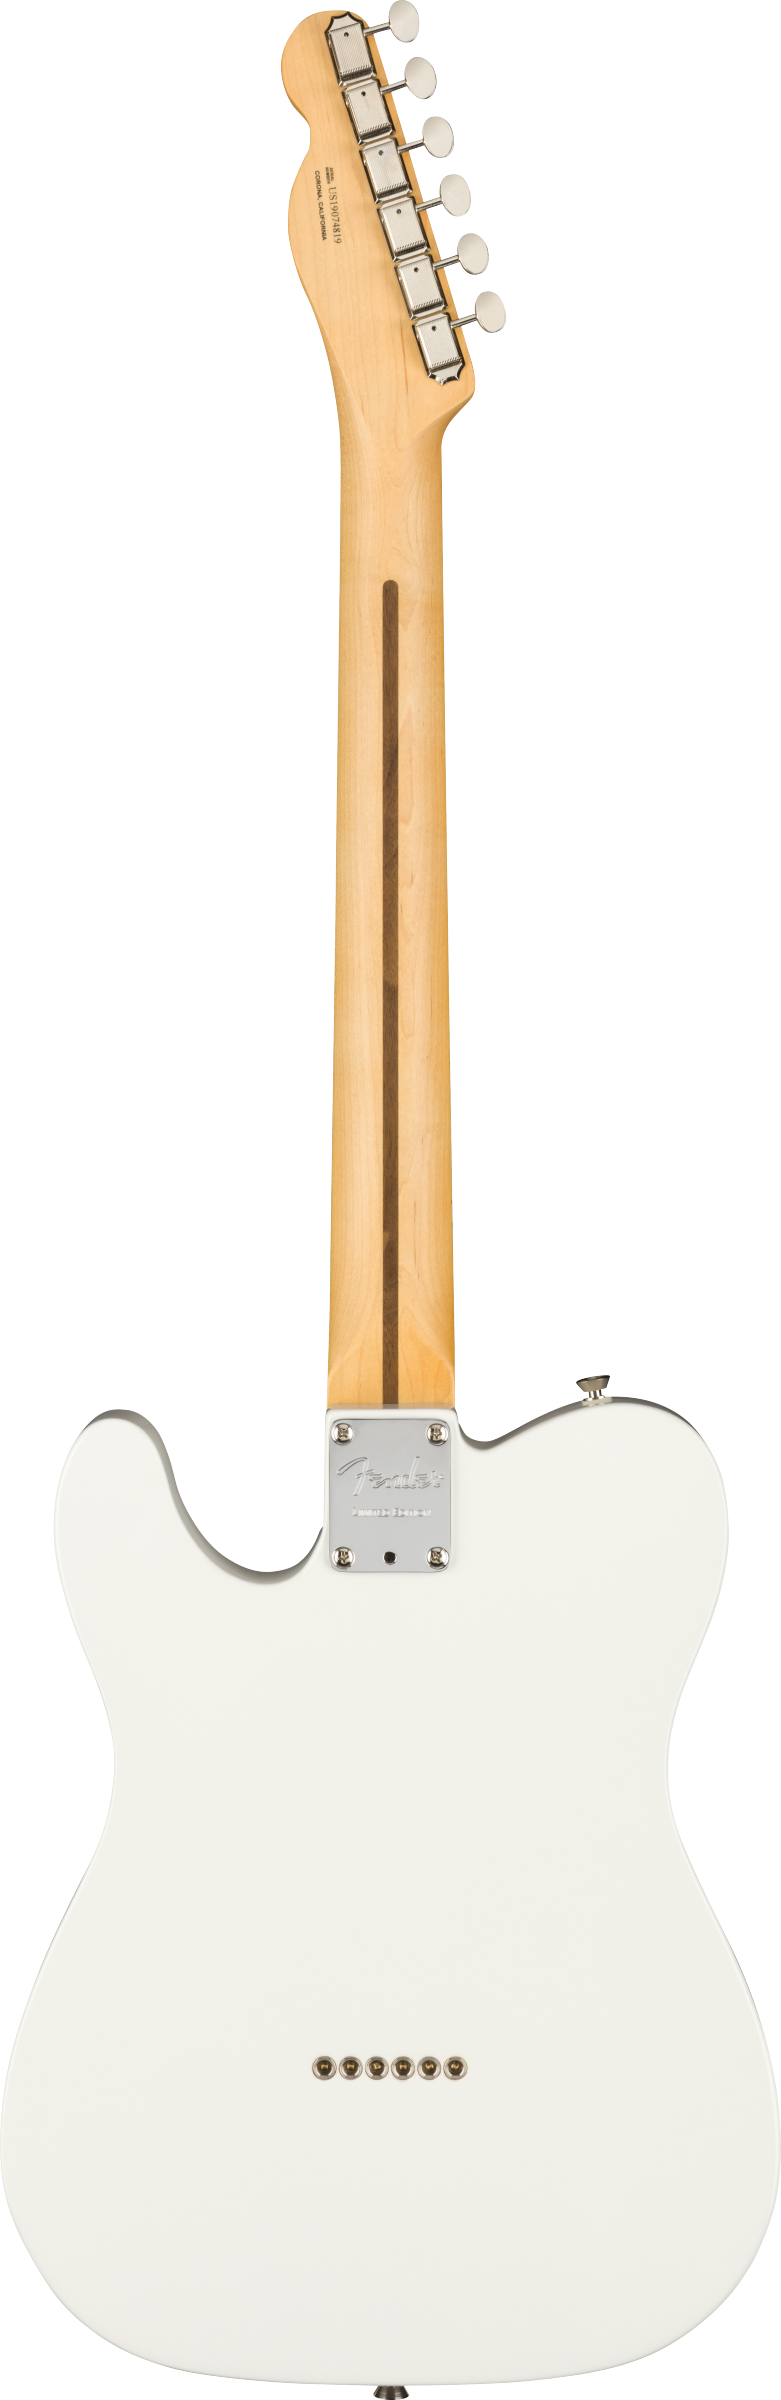 Fender Two-Tone Telecaster thinline LTD - touche ébène Daphne blue